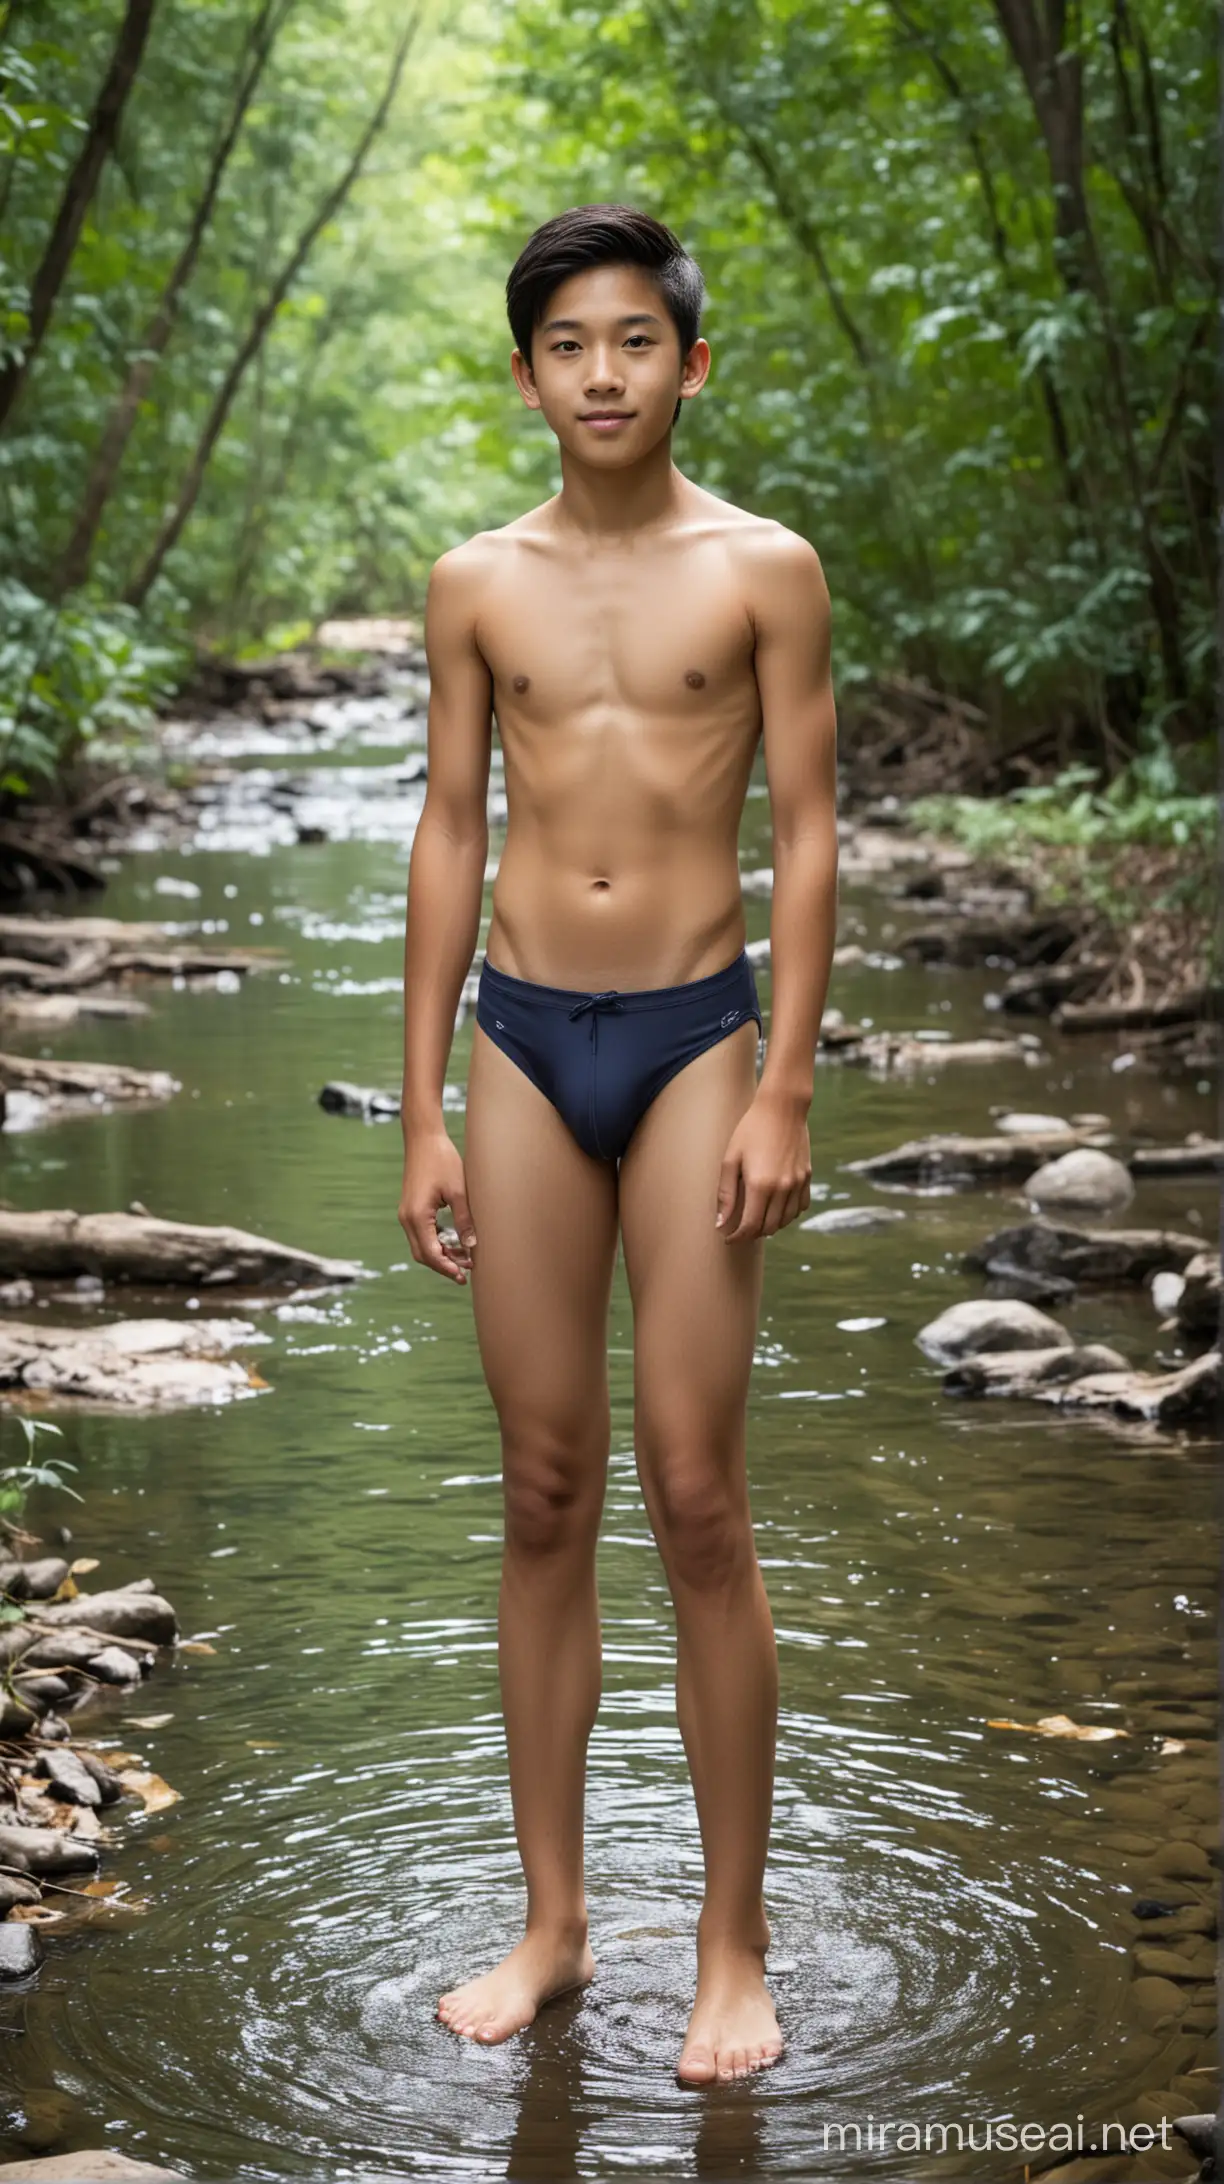 14 y.o. asian handsome boy wearing speedo, standing in creek in deep woods, little body fat, full body